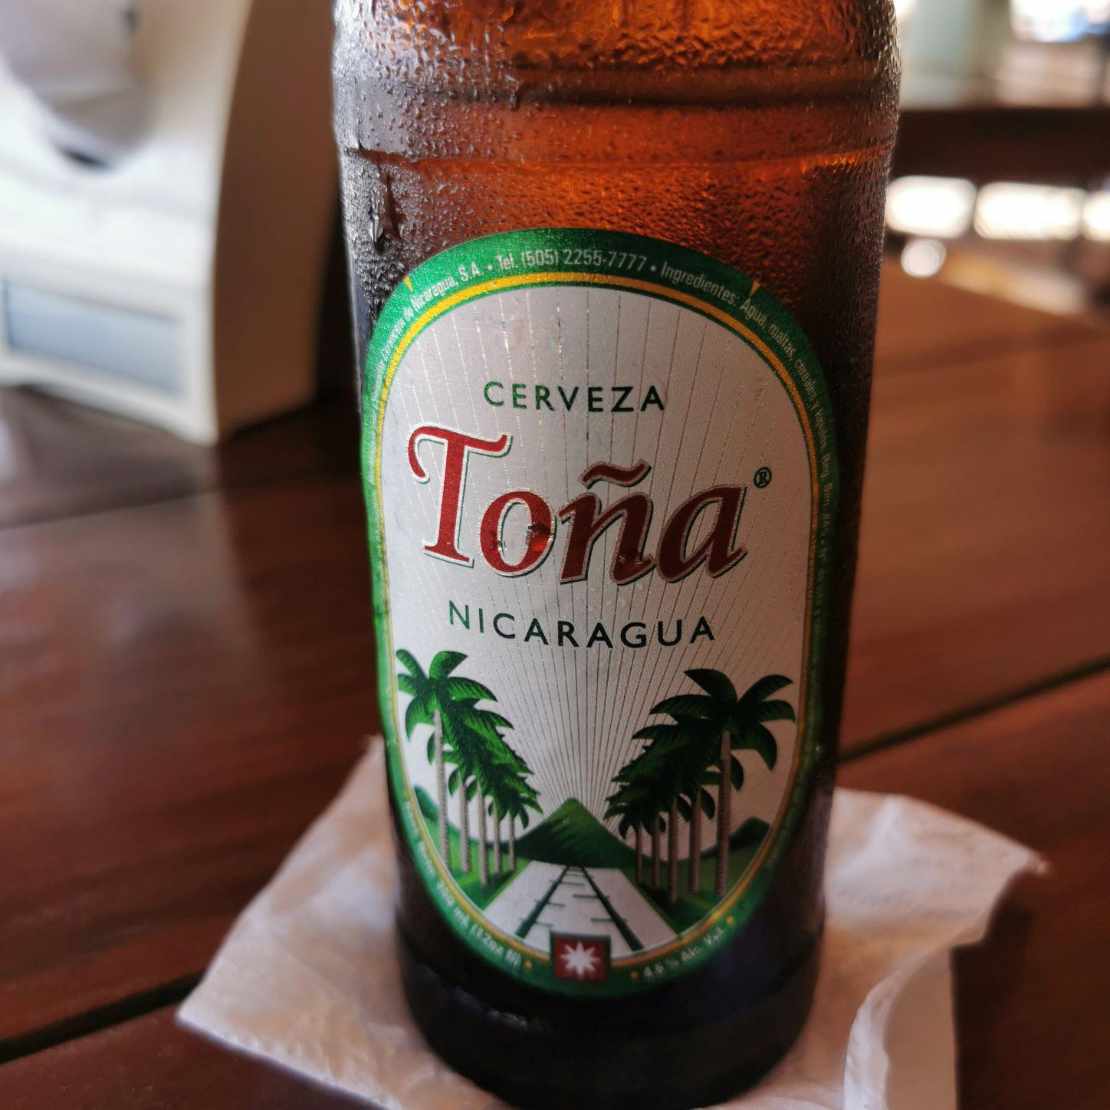 Nicaraguan cerveza